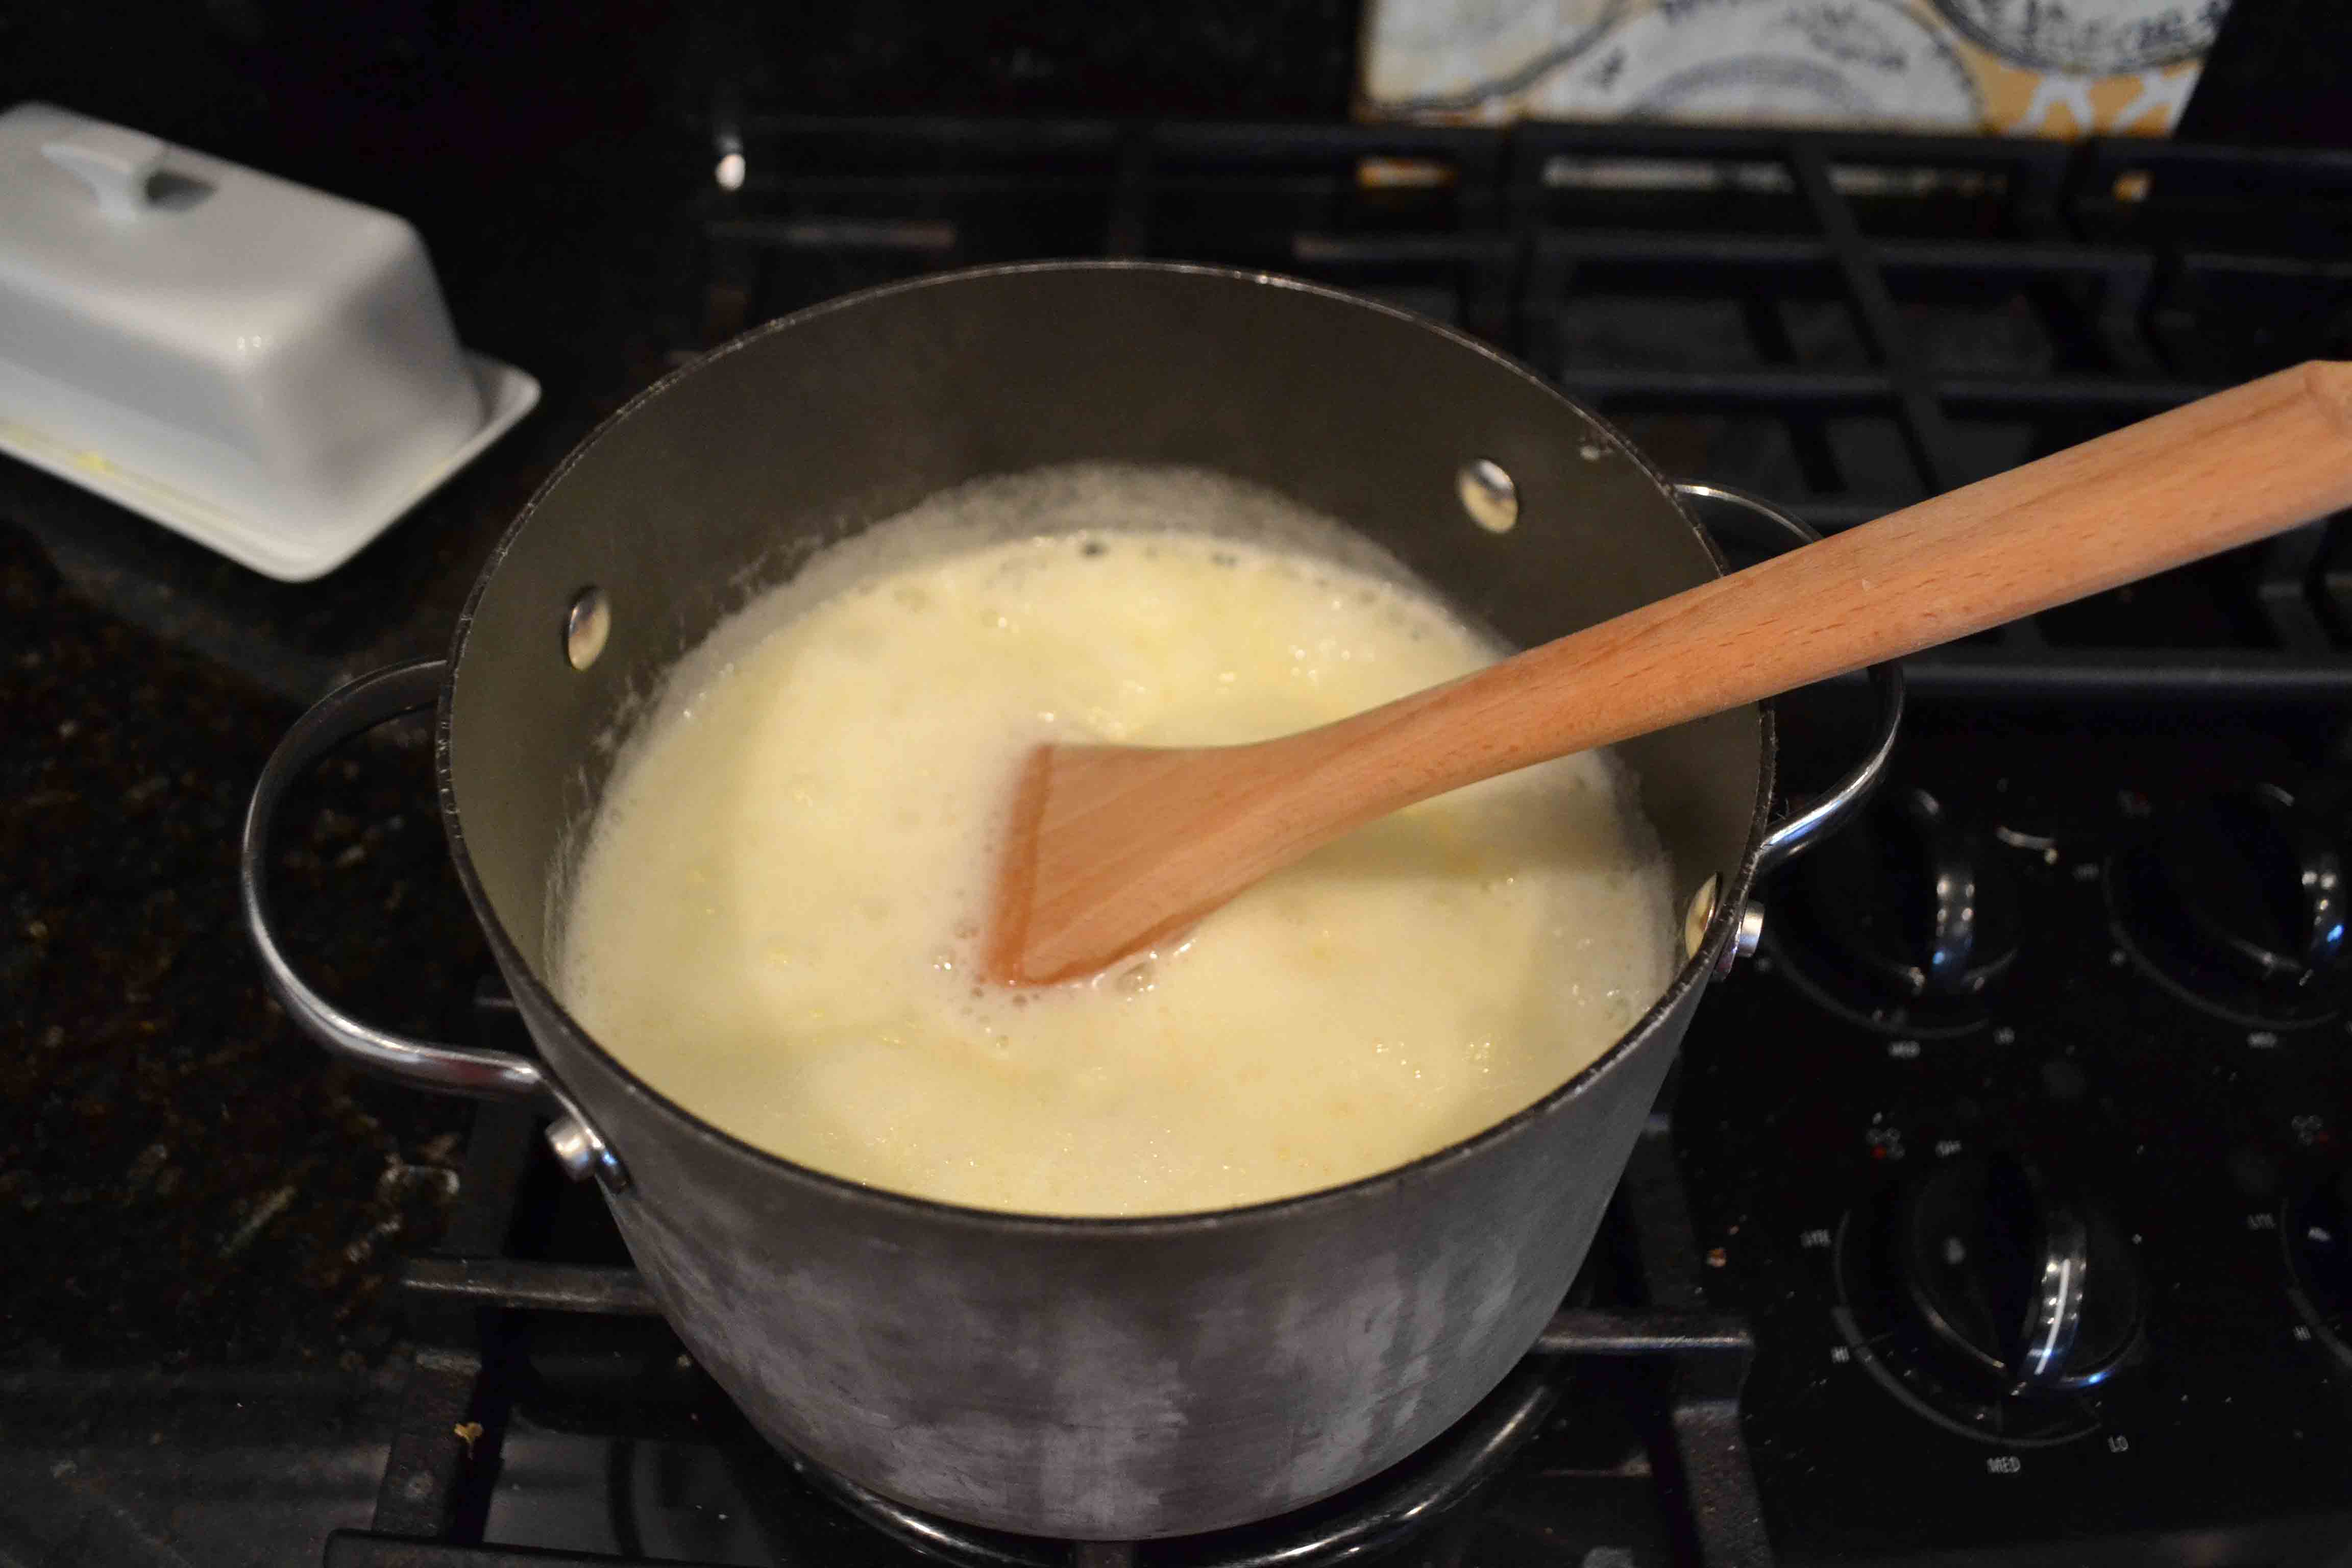 How to make Buttermilk Syrup. A perfect buttermilk syrup recipe. The best homemade buttermilk syrup recipe. www.modernhoney.com